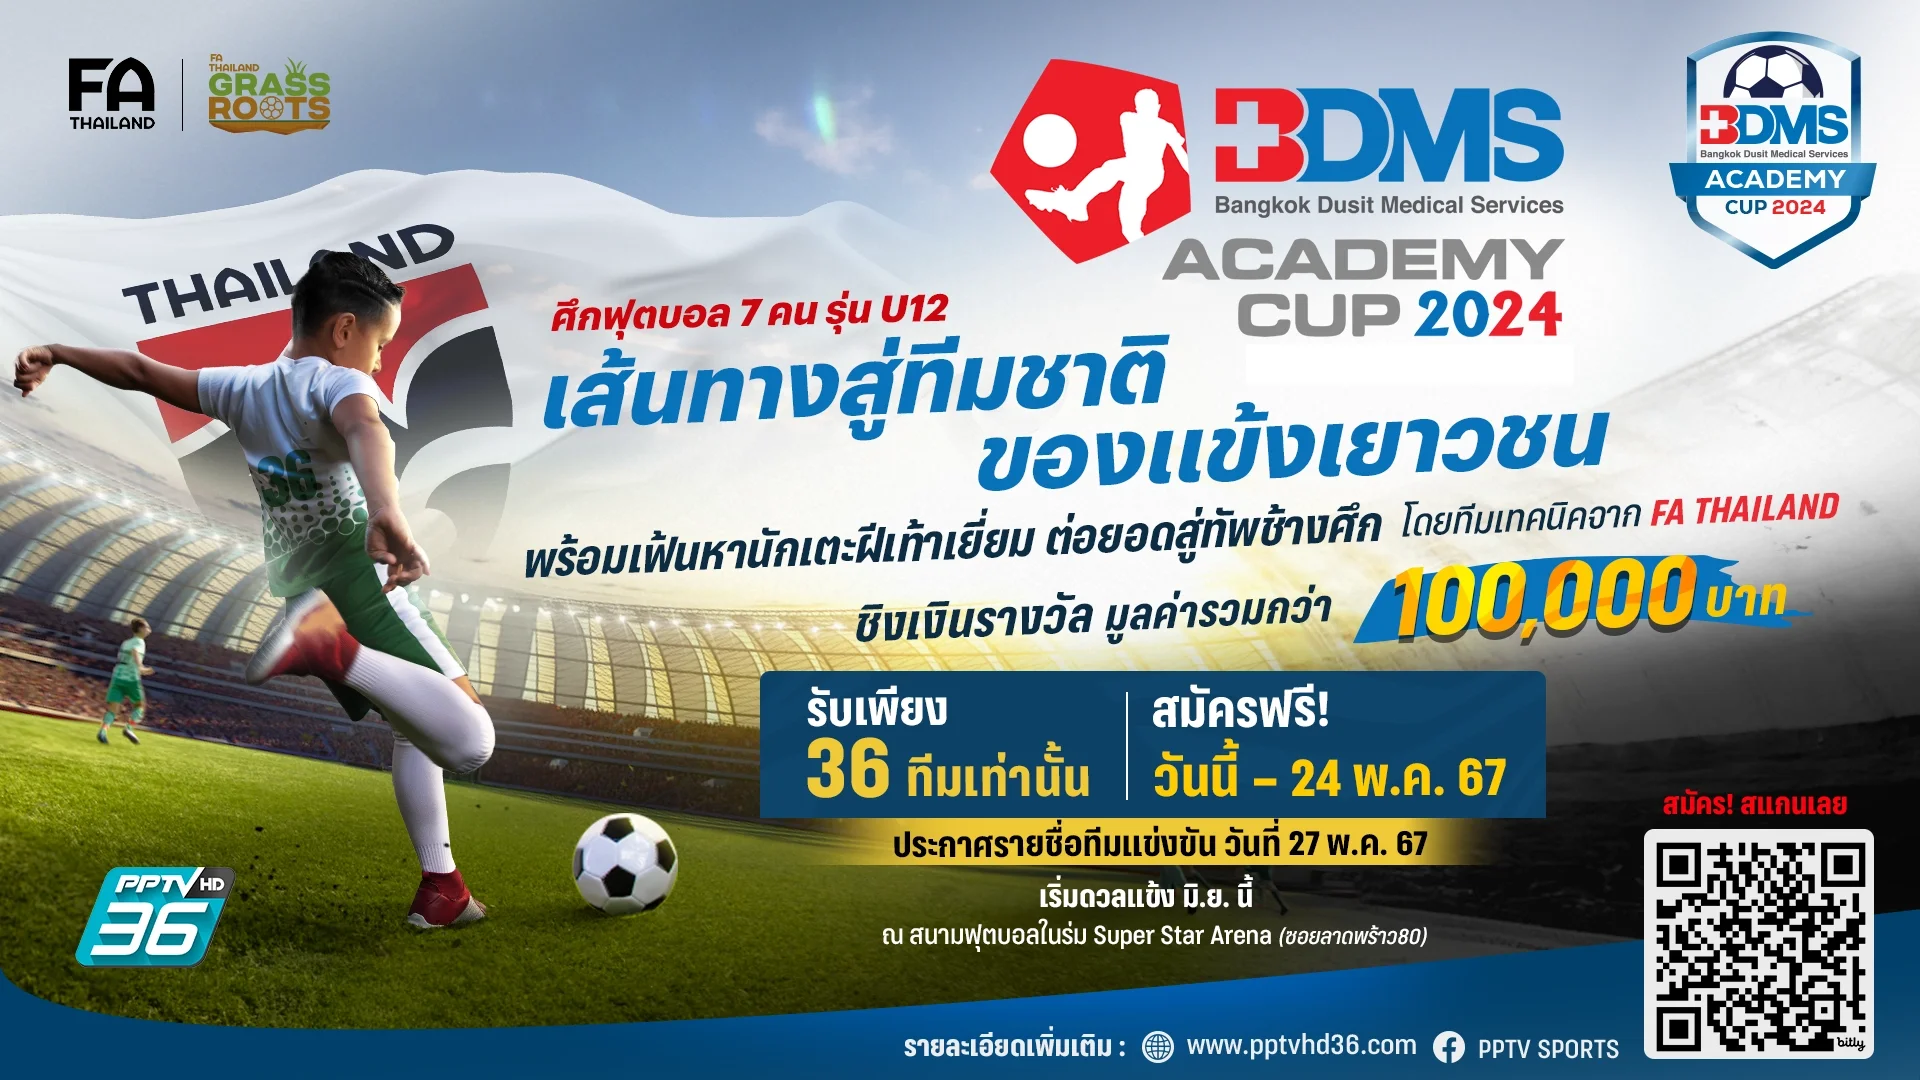 ประตูสู่ทีมชาติ! เปิดรับสมัคร ฟุตบอลเยาวชน 7 คน รุ่น U12 'BDMS Academy Cup 2024'